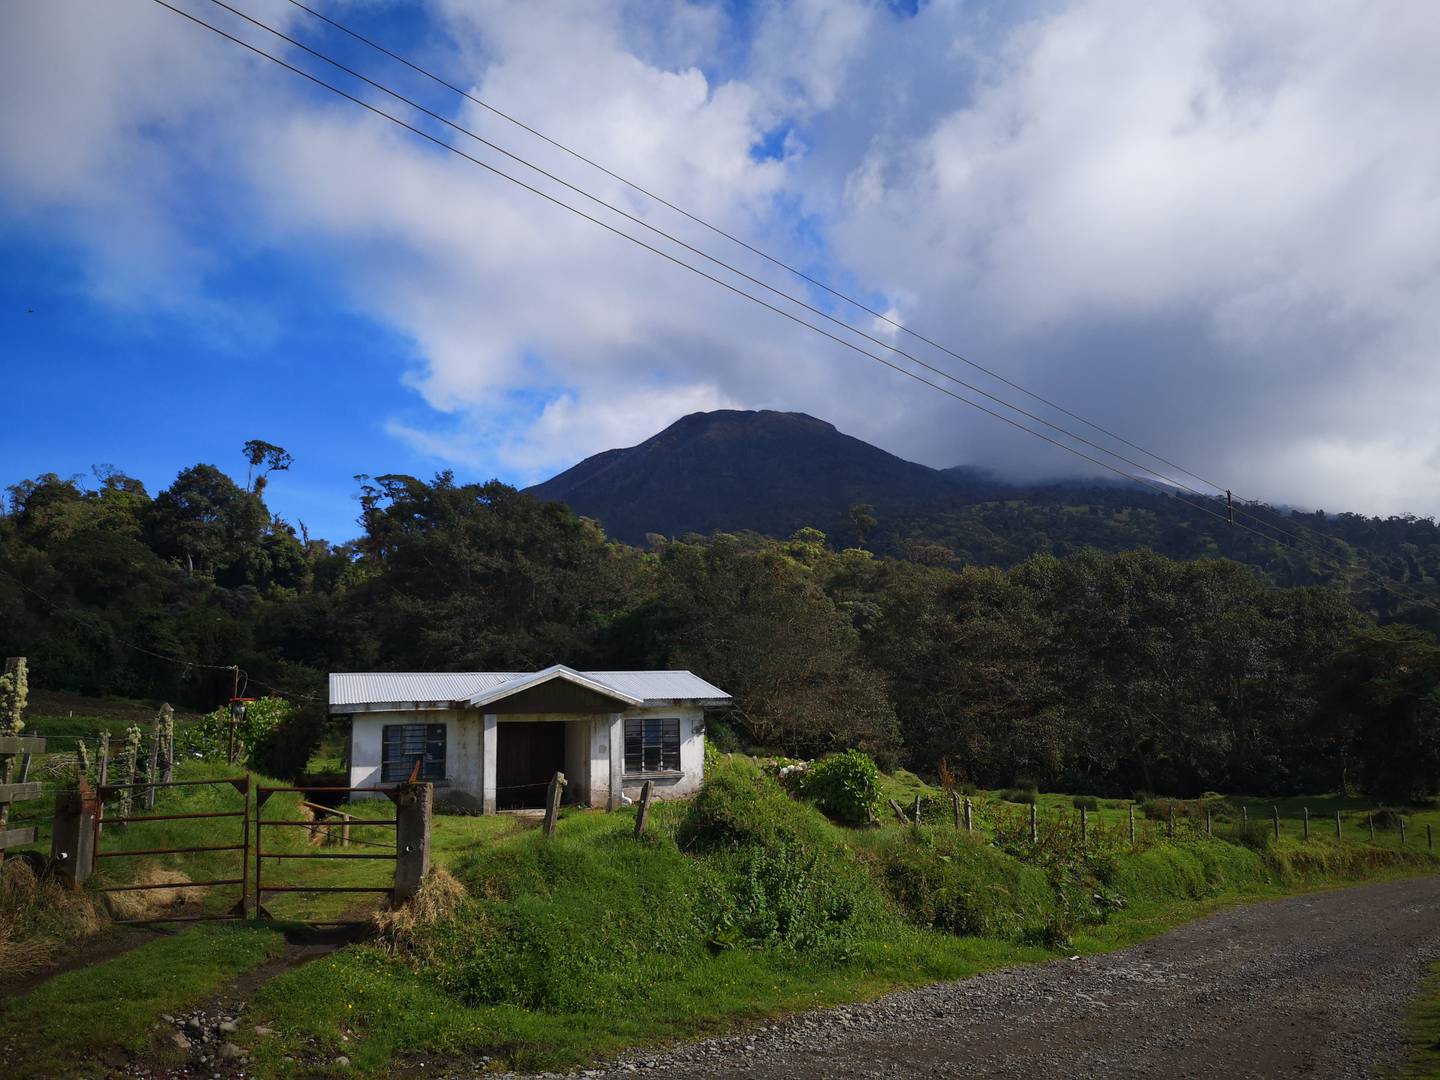 De camino hacia El Tapojo, el volcán Turrialba se observa con forma de pirámide truncada. Foto: H. Solano.